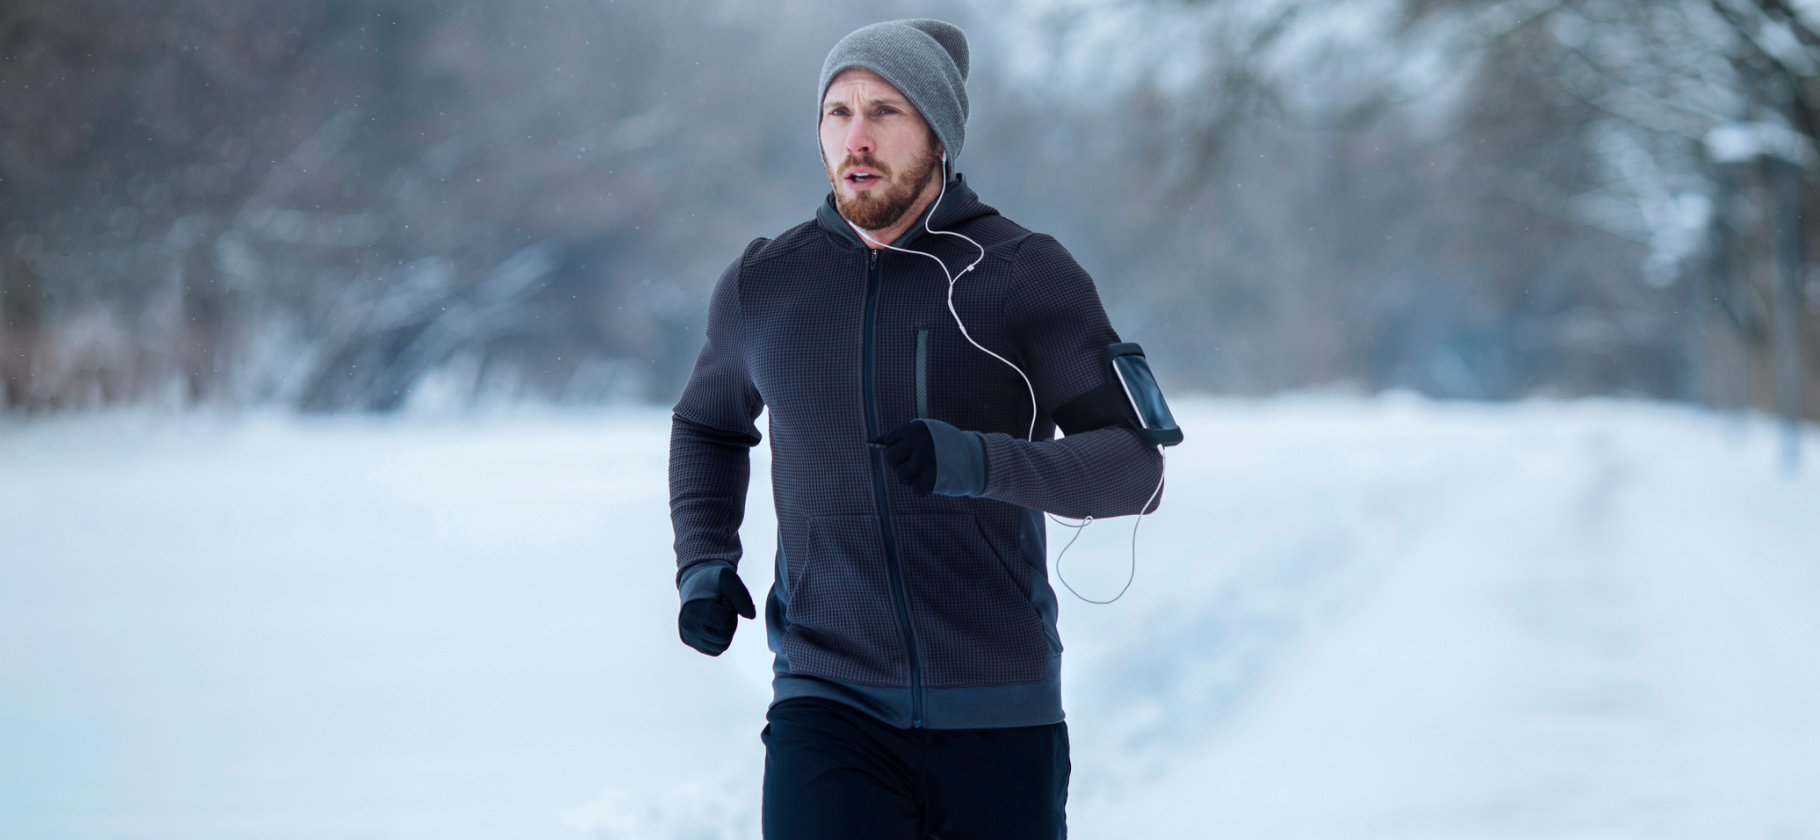 «Пробежка в −20…25 °C будет комфортной»: 6 советов, как бегать в холодное время года